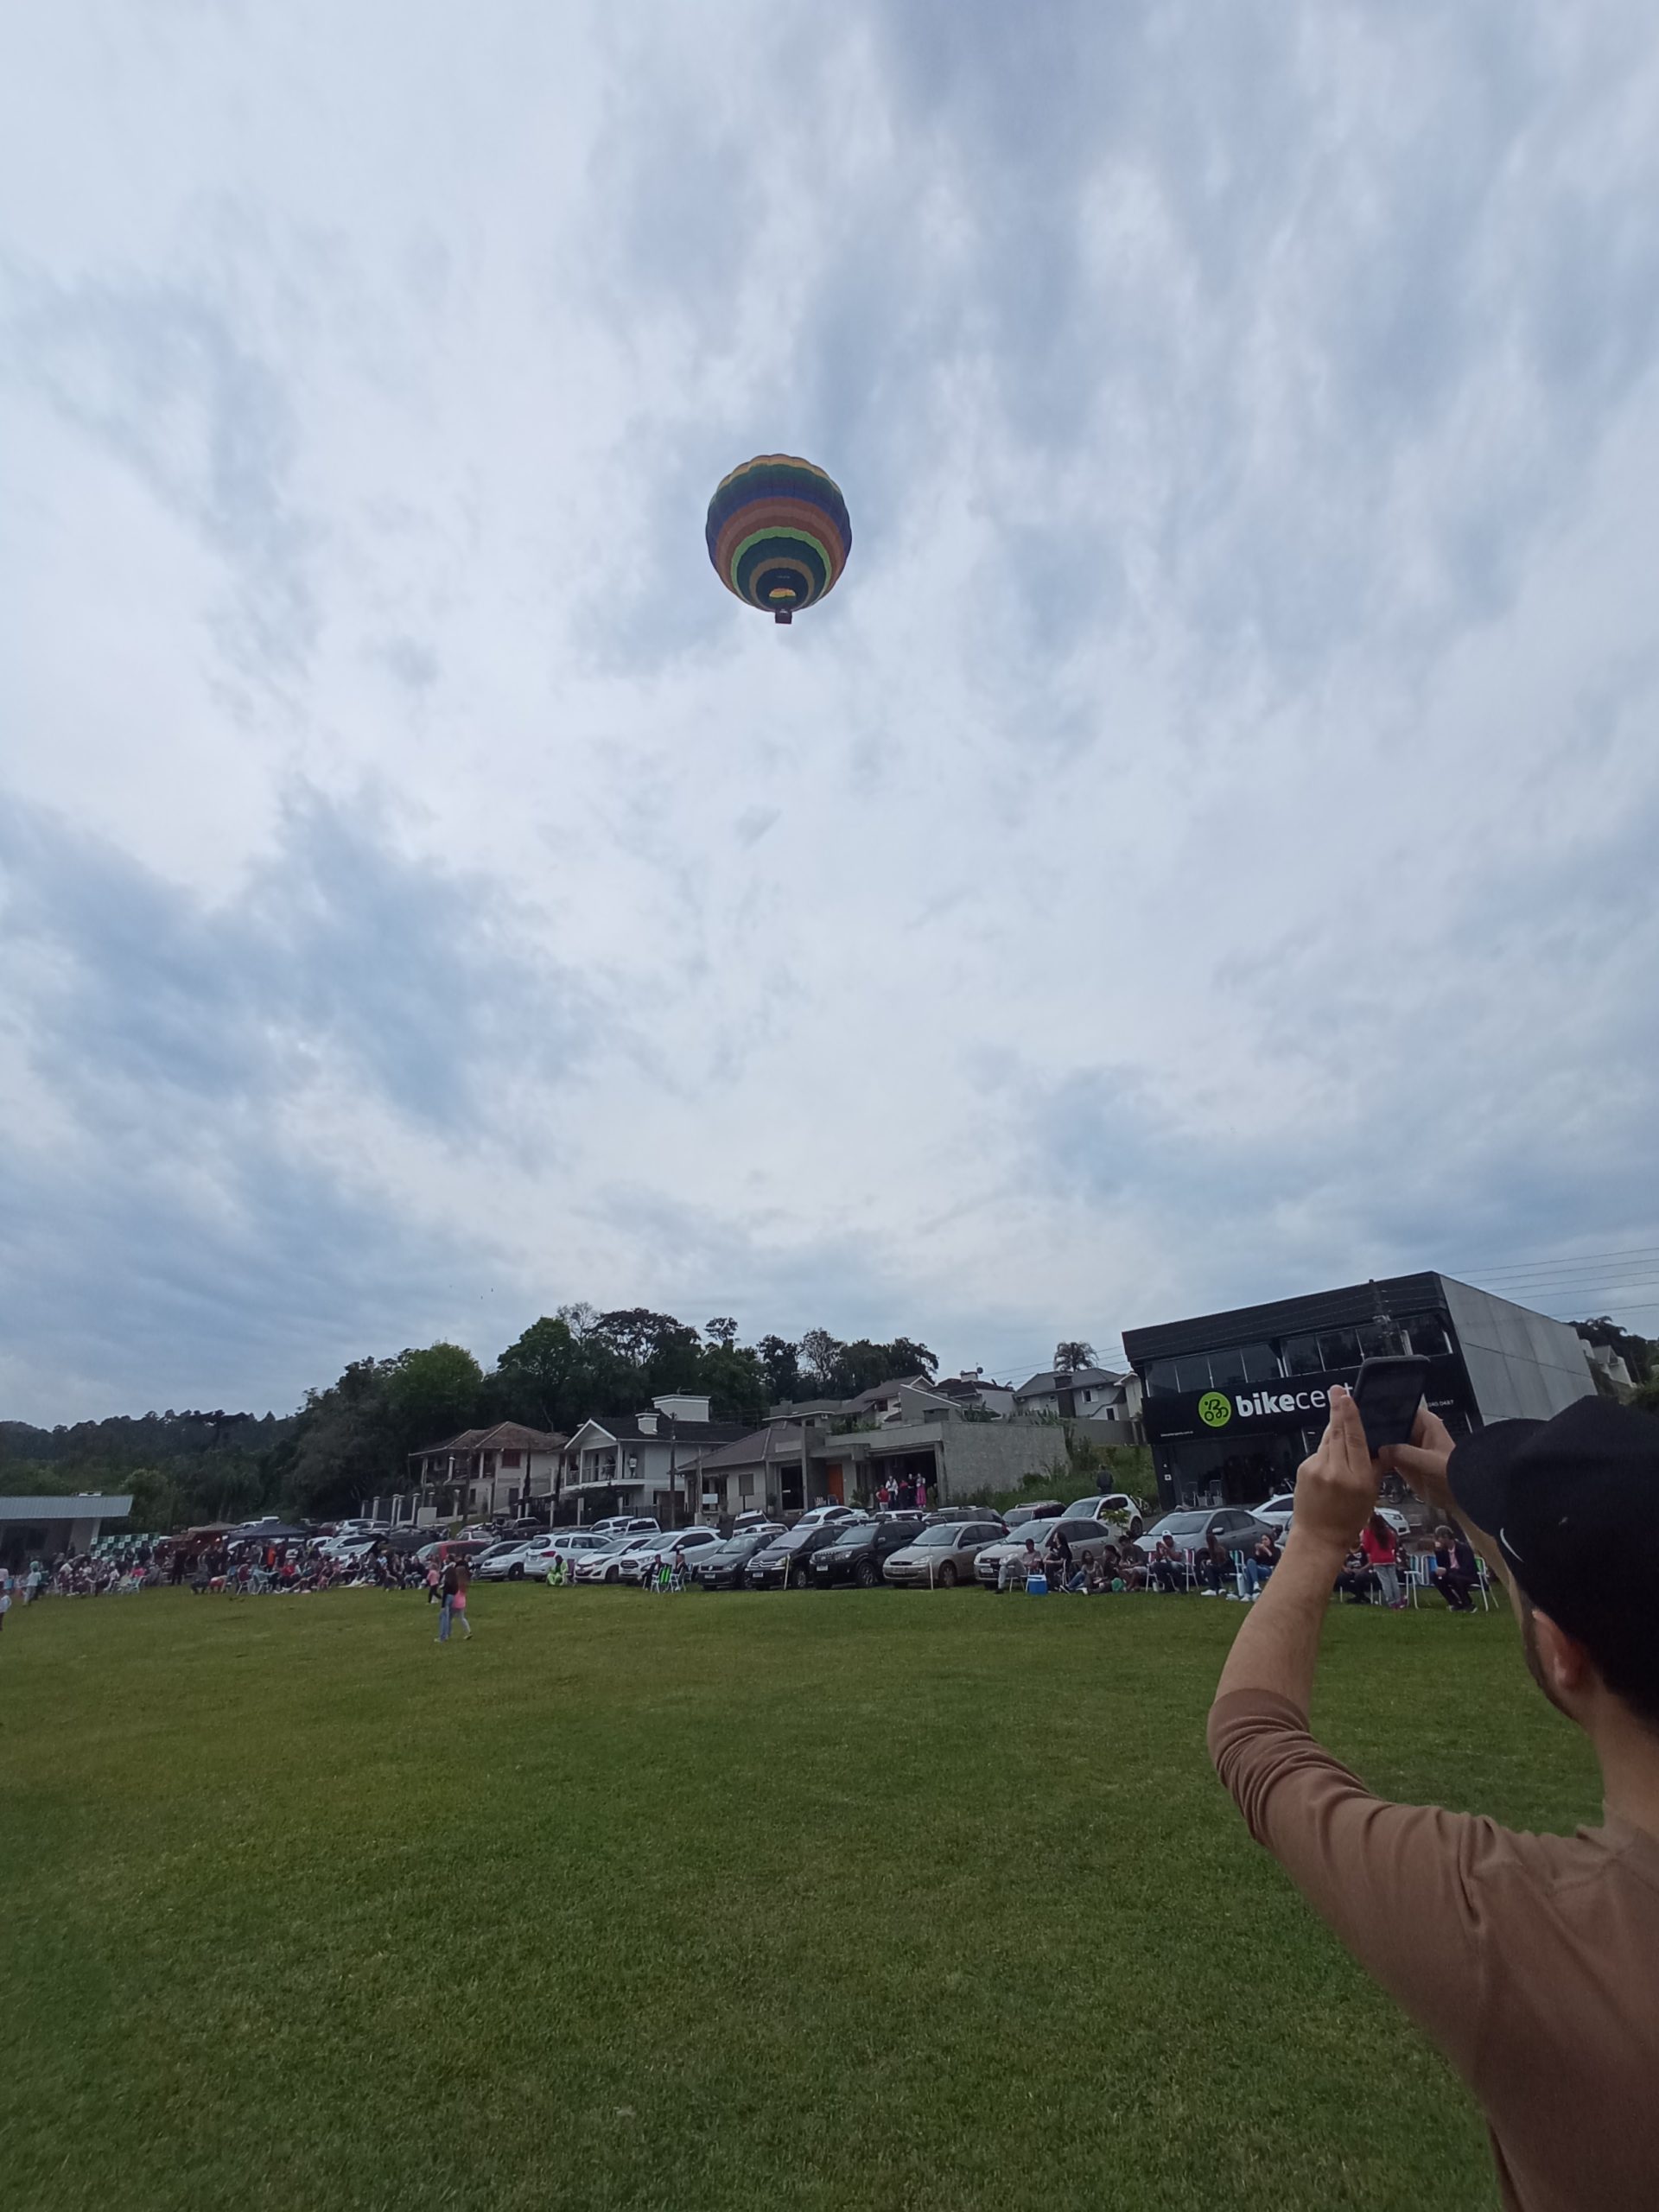 Passeio de balão é atração de evento em Santa Clara do Sul